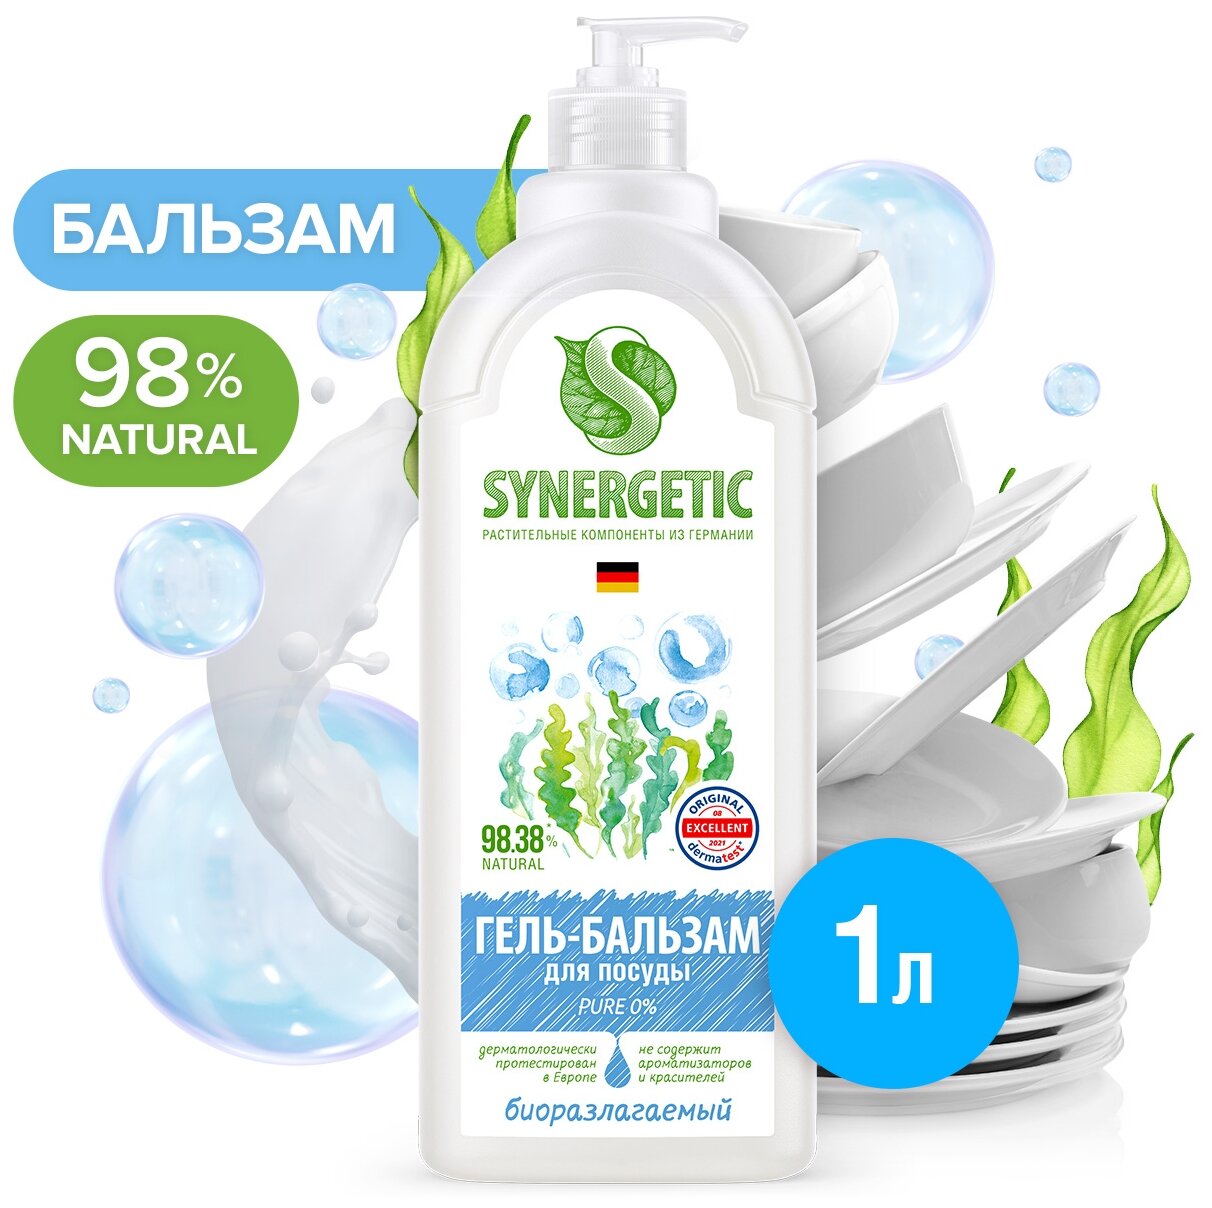 Synergetic Биоразлагаемый гель-бальзам для мытья посуды и детских игрушек Pure 0% без запаха